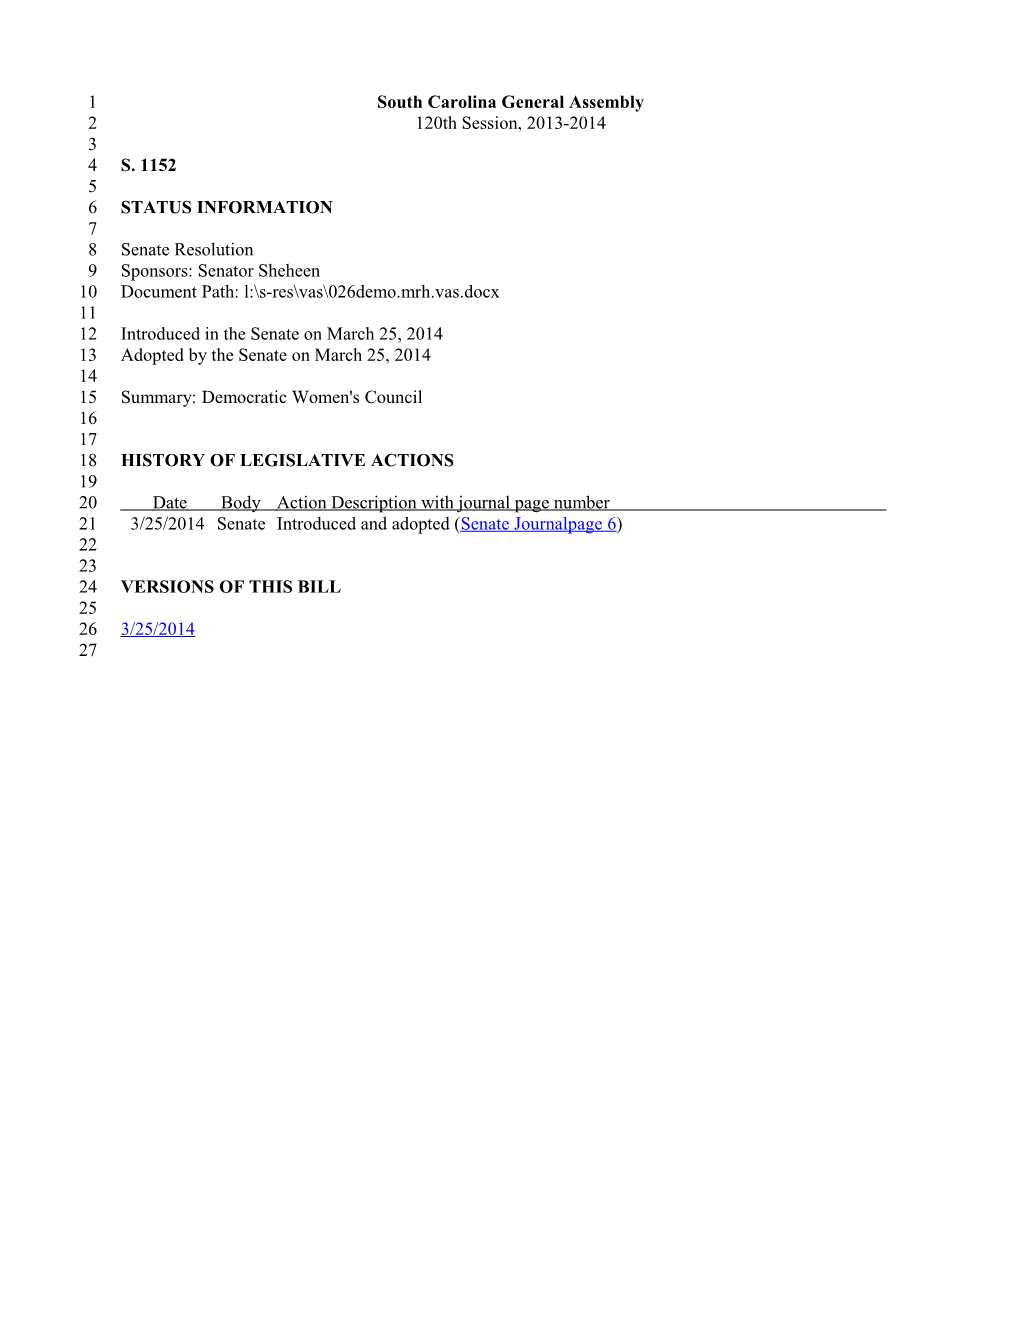 2013-2014 Bill 1152: Democratic Women's Council - South Carolina Legislature Online